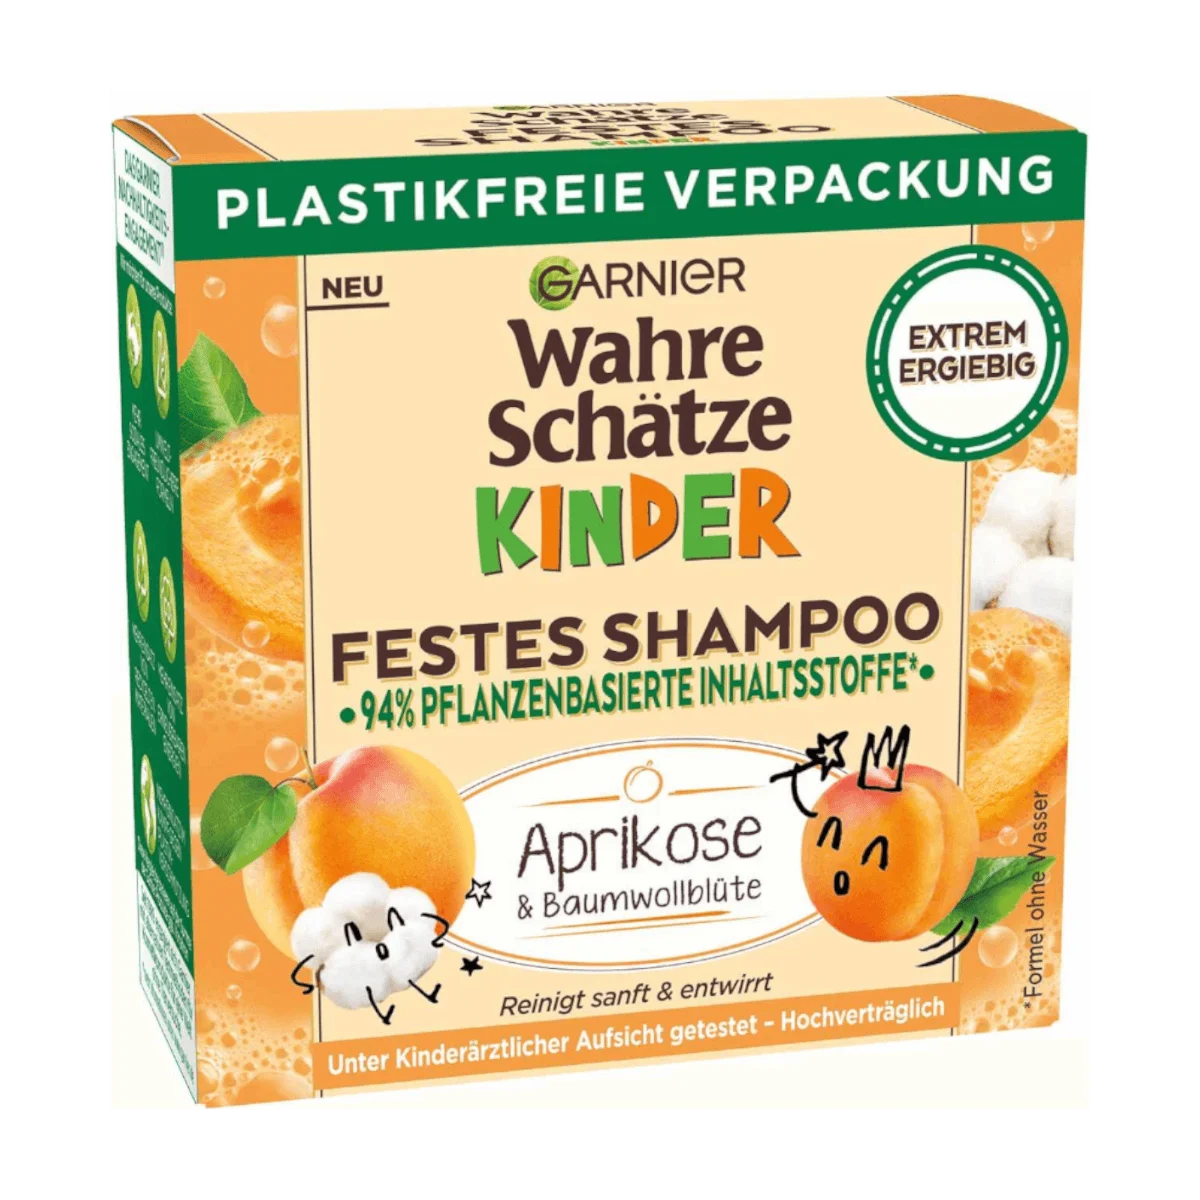 Garnier Wahre Schätze Festes Shampoo Aprikose u. Baumwollblüte, 60 g